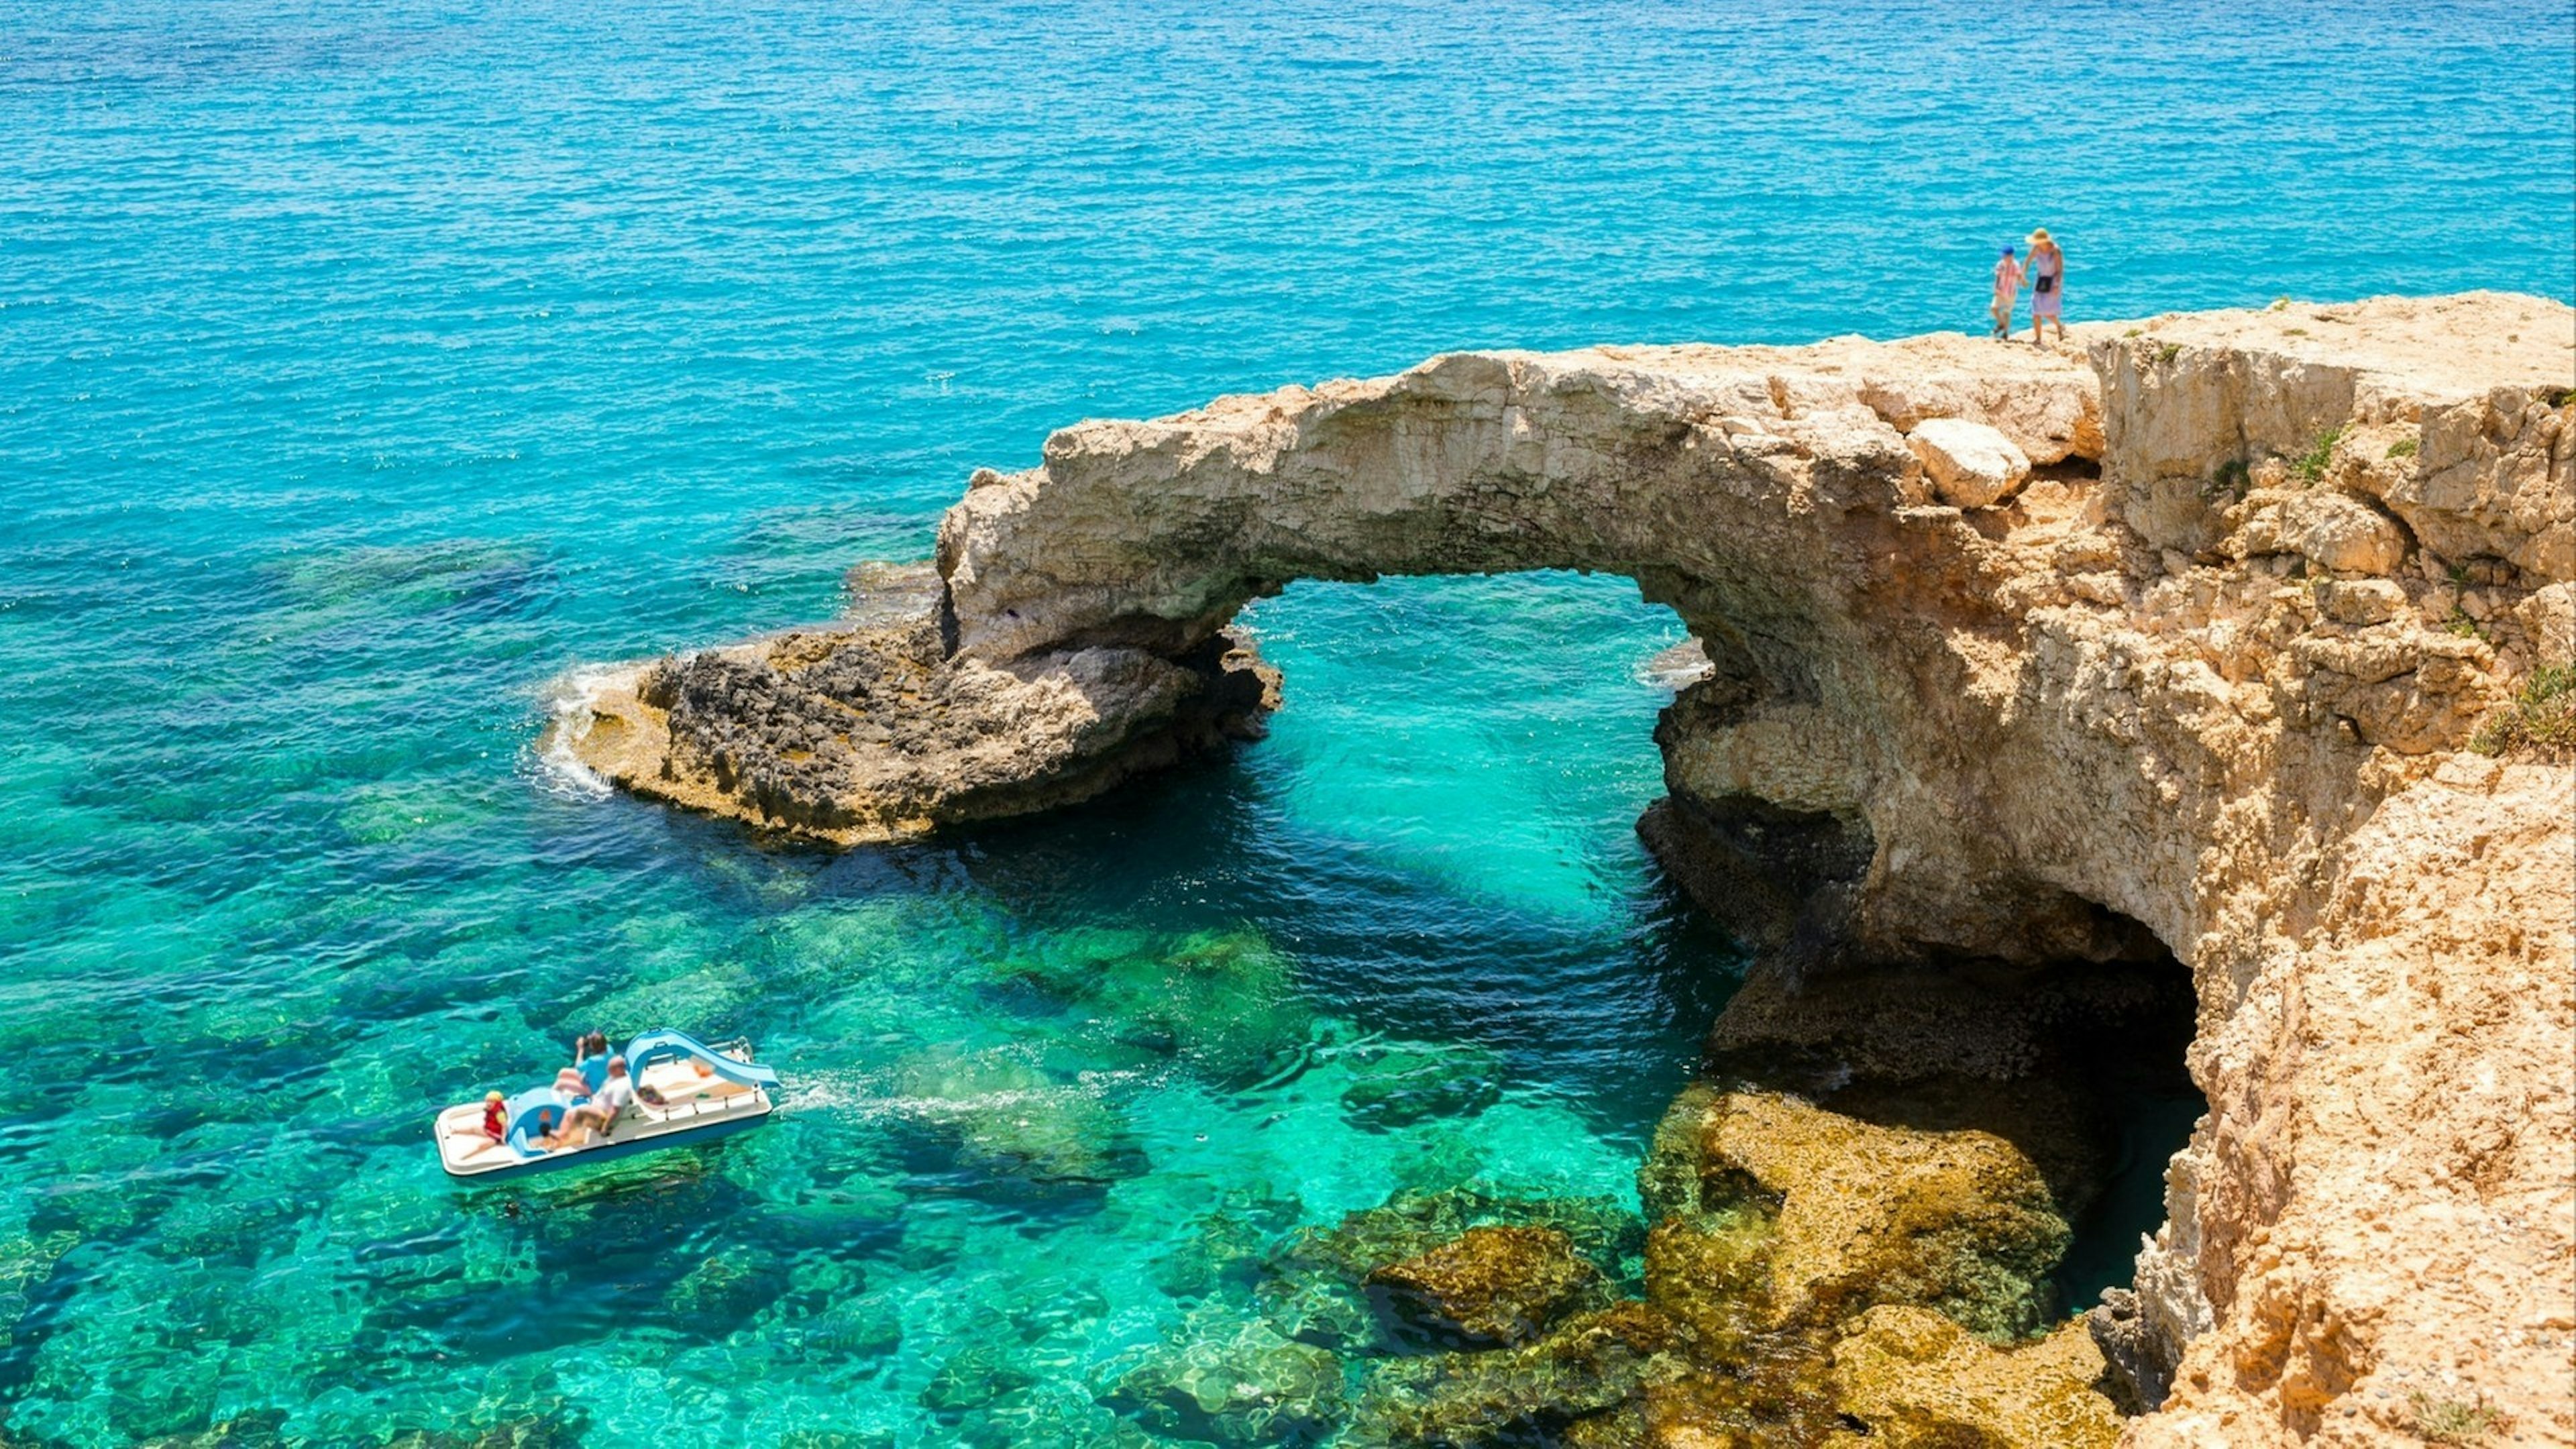 Cyprus, Bridge of Lovers